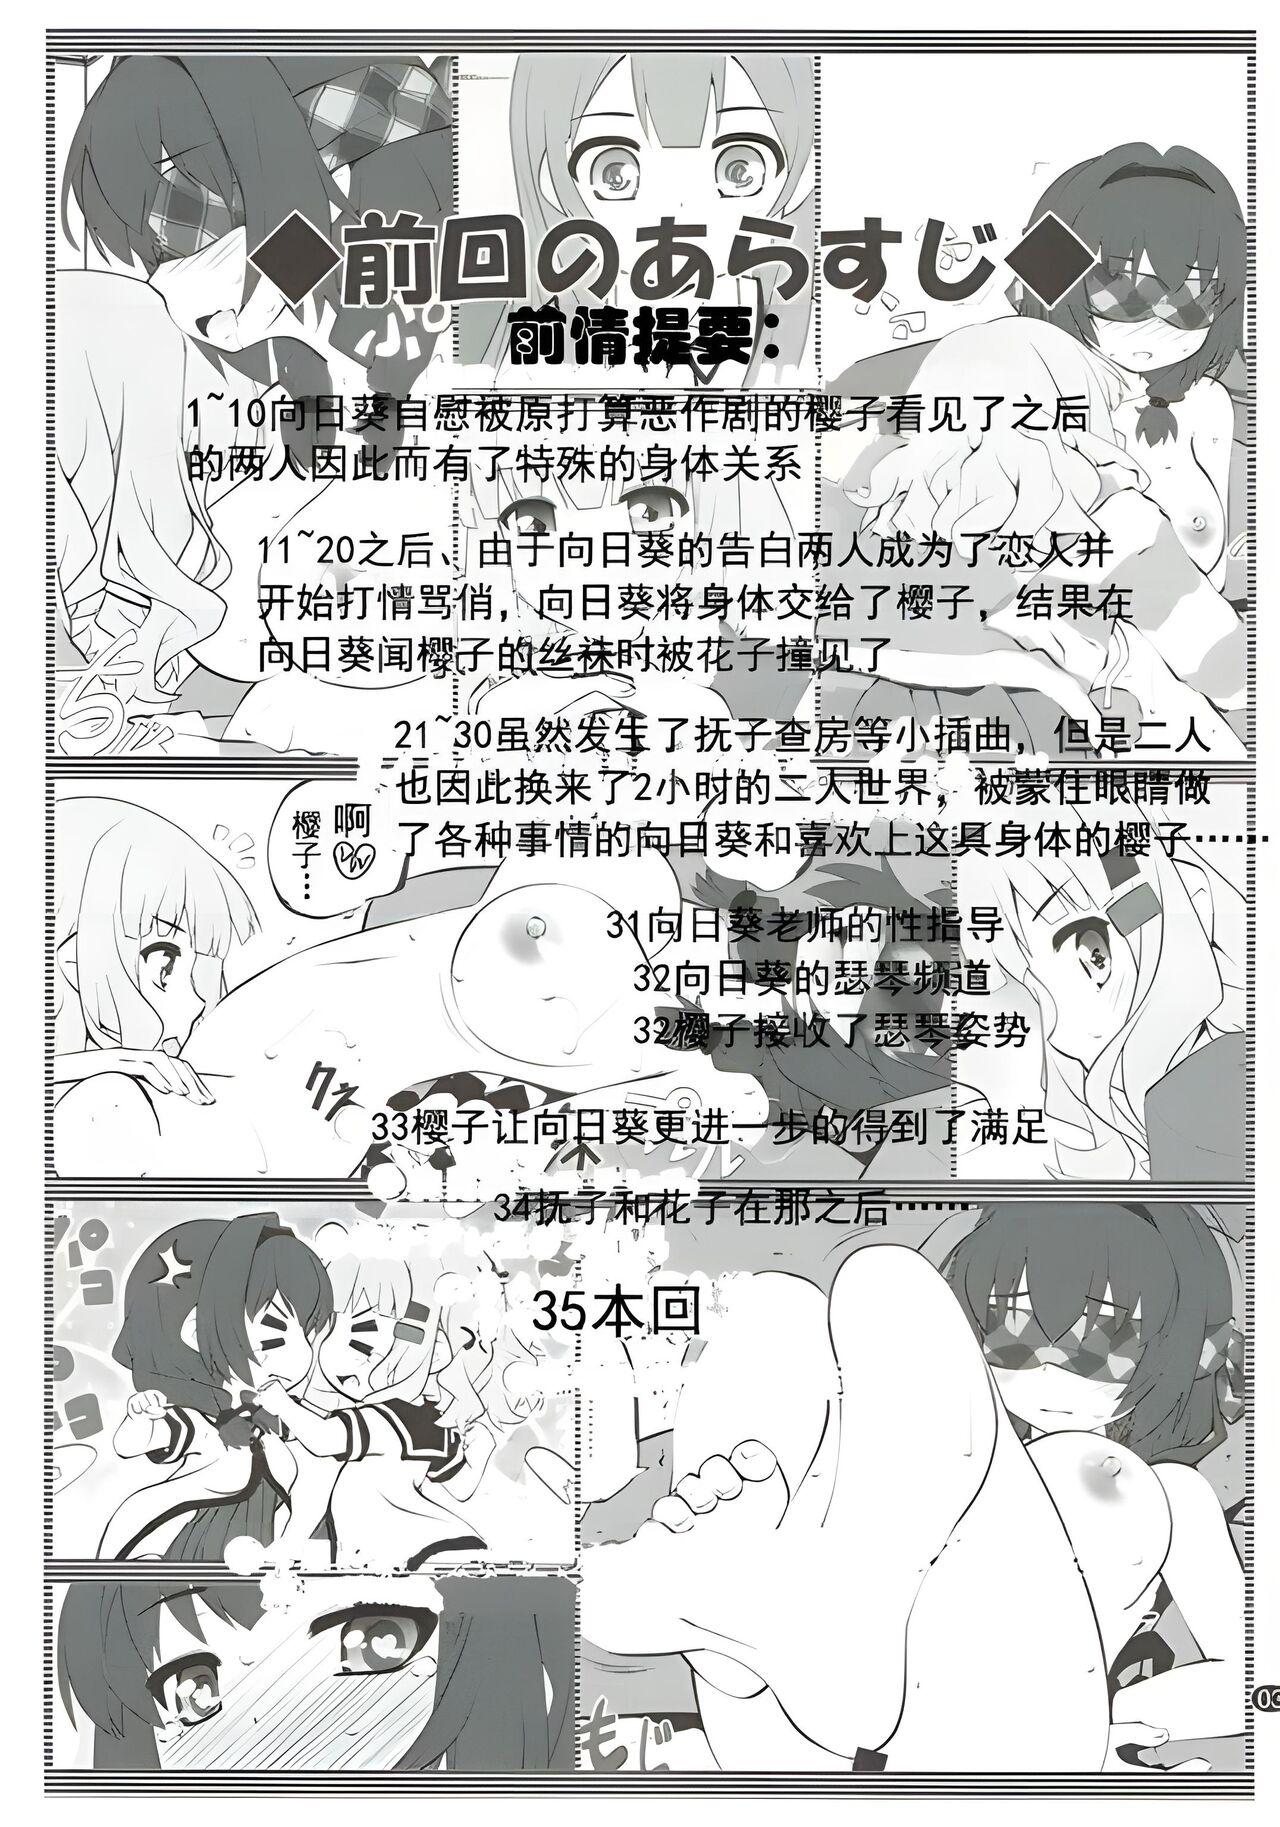 Farting Himegoto Flowers 11 - Yuruyuri Gay Boysporn - Page 2